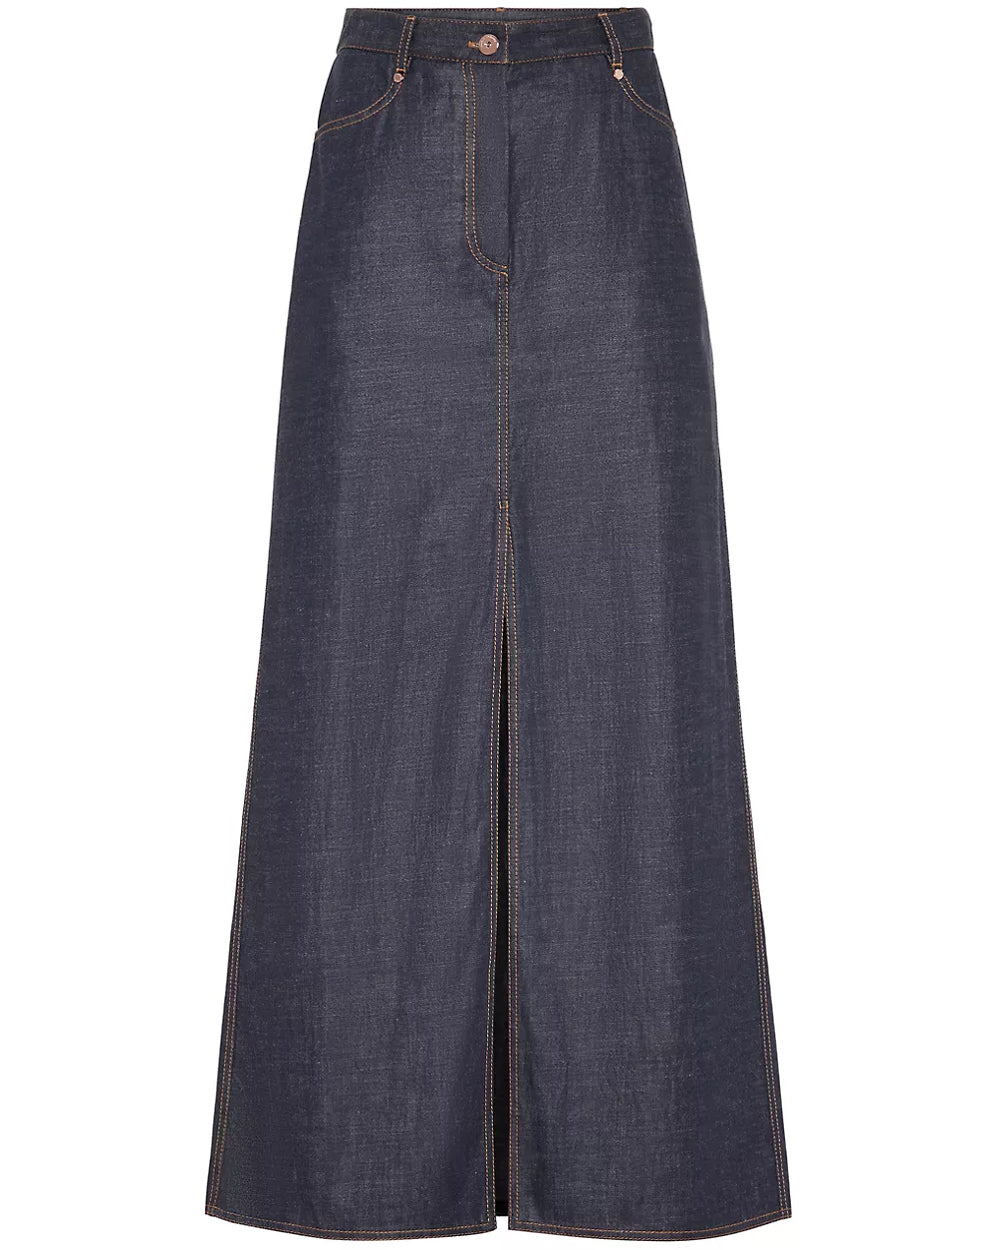 Long Front Slit Denim Skirt in Dark Wash